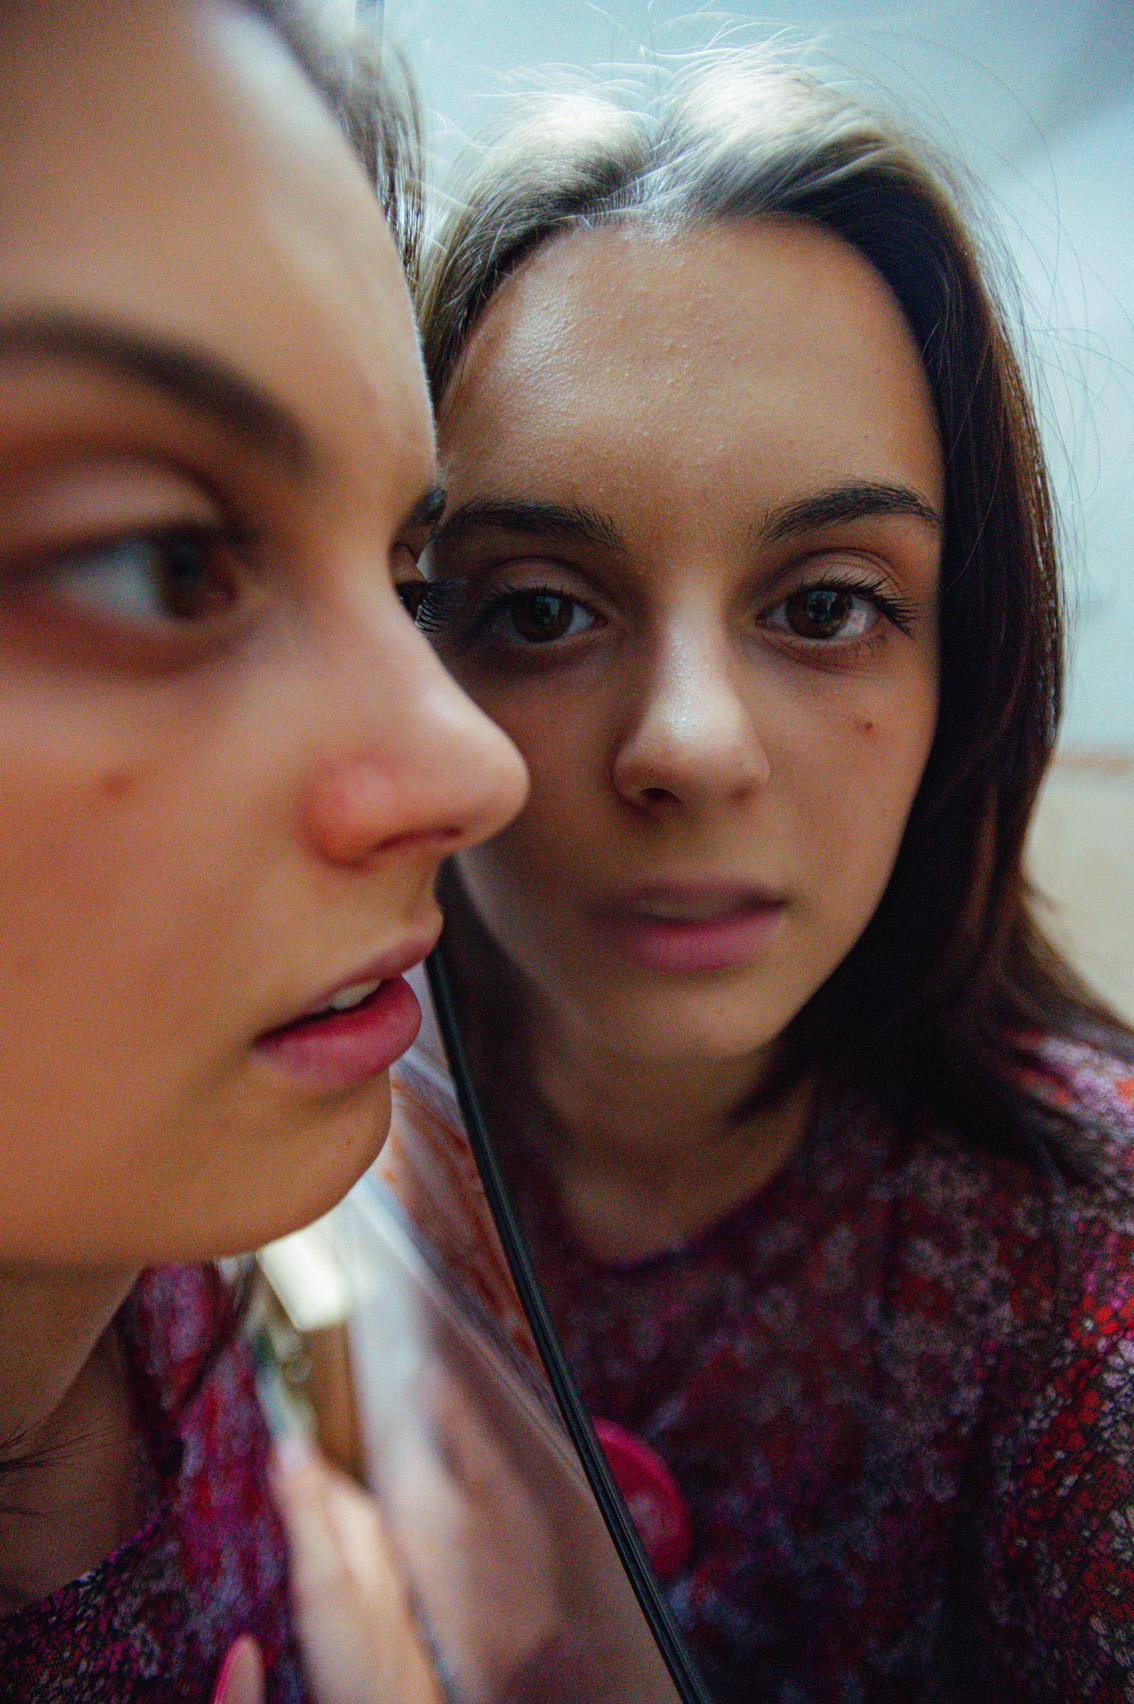 Młoda brunetka we wzorzystej różowoczerwonej bluzce przykłada bokiem swoją twarz do lustra, która się w nim odbija.